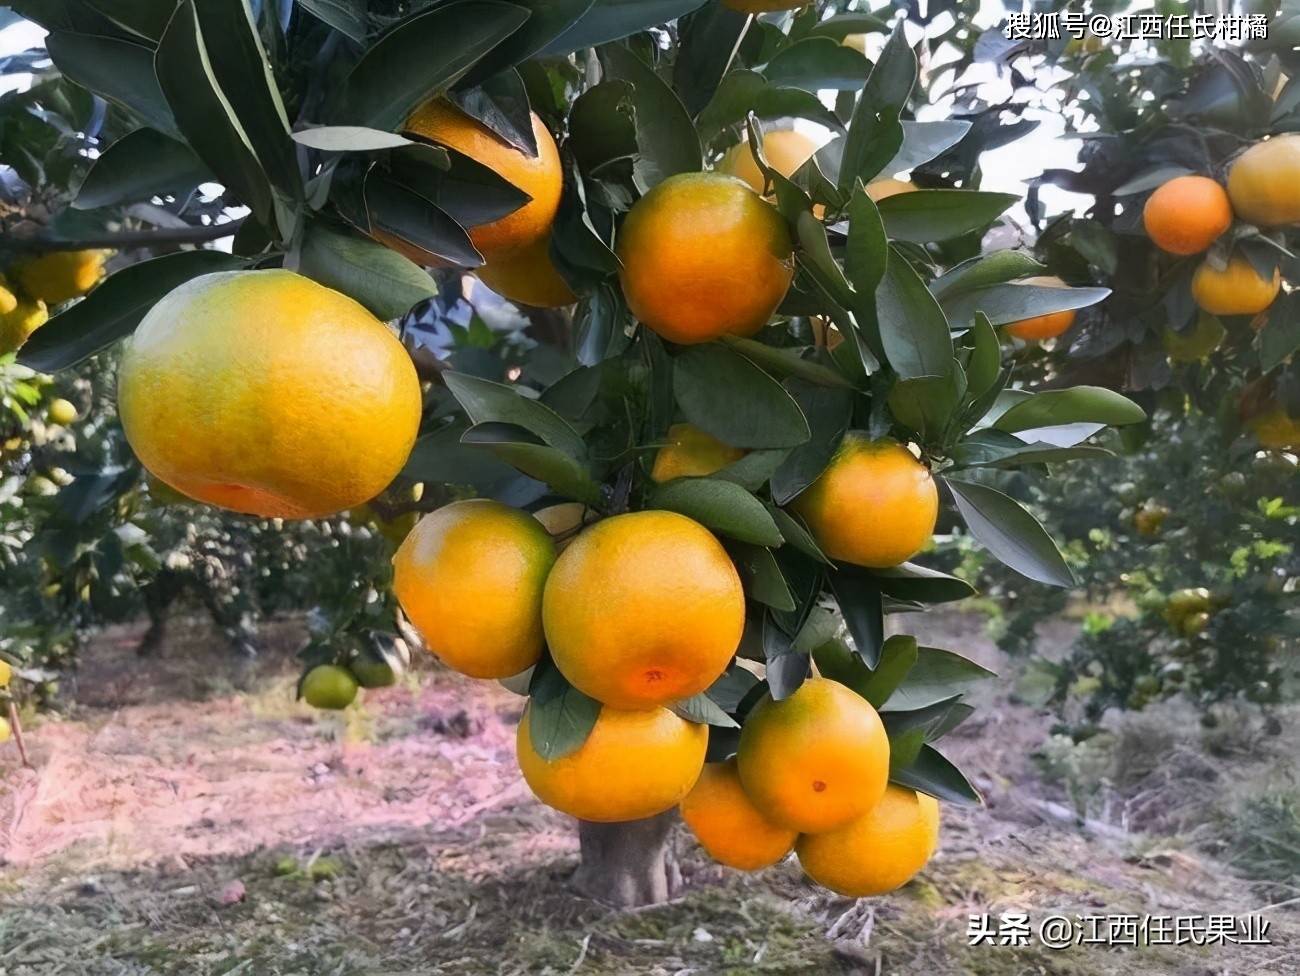 阳光一号柑橘,阳光一号桔柚独特优势有哪些?